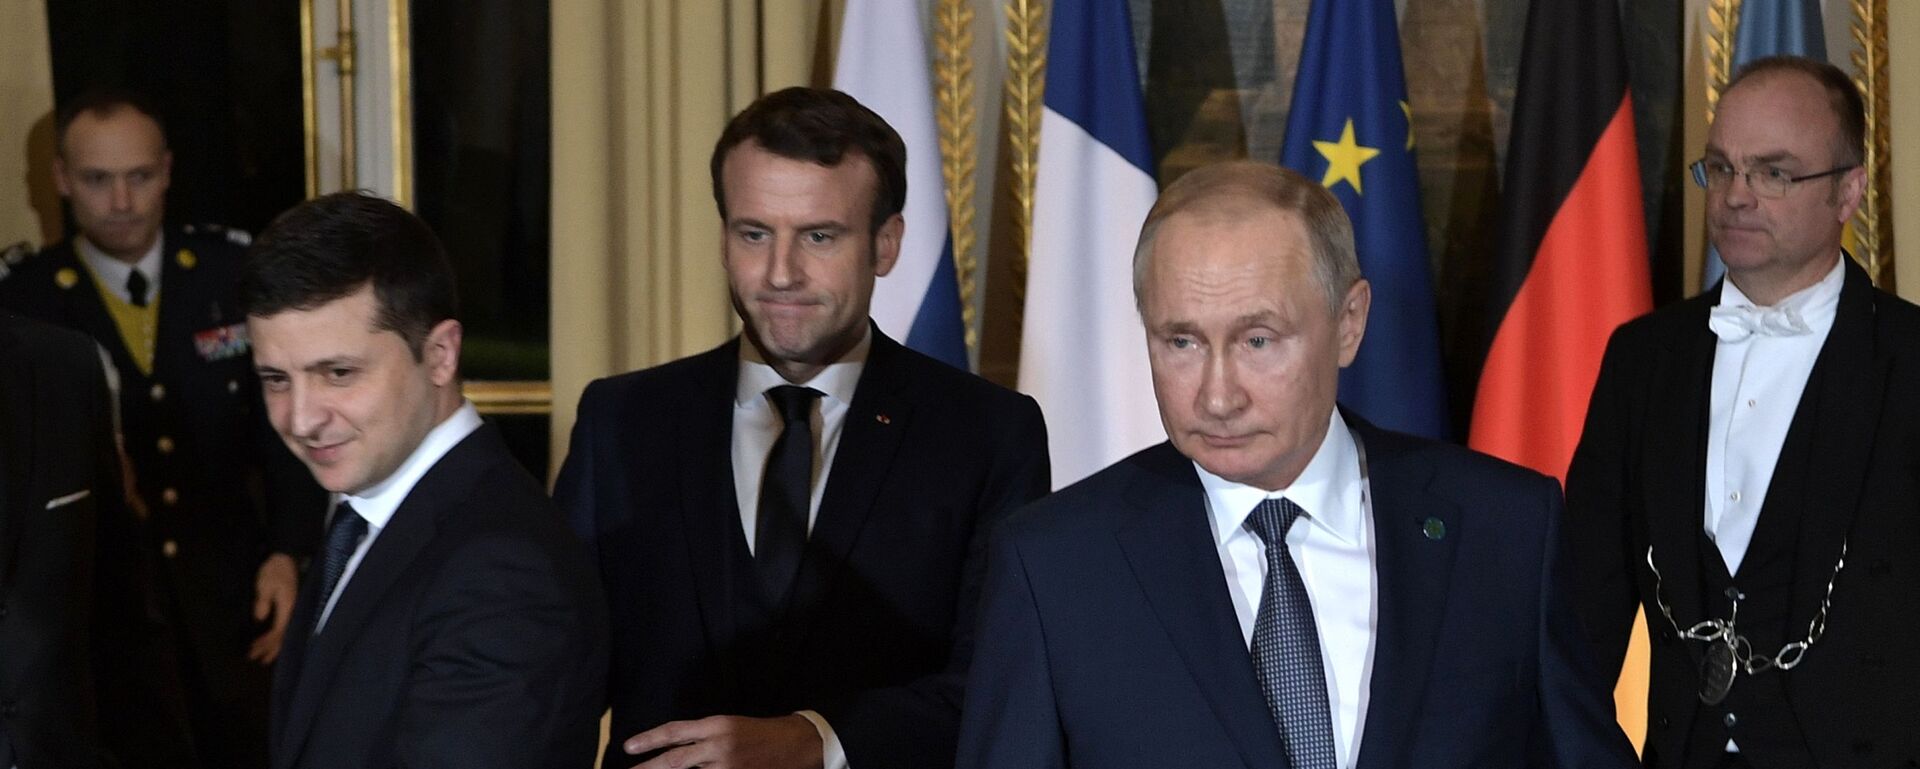  Vladimir Putin, Vladimir Zelensky và Tổng thống Pháp Emmanuel Macron ( cuộc gặp gỡ theo  “định dạng Normandy” (09.12.2019).  - Sputnik Việt Nam, 1920, 05.06.2022